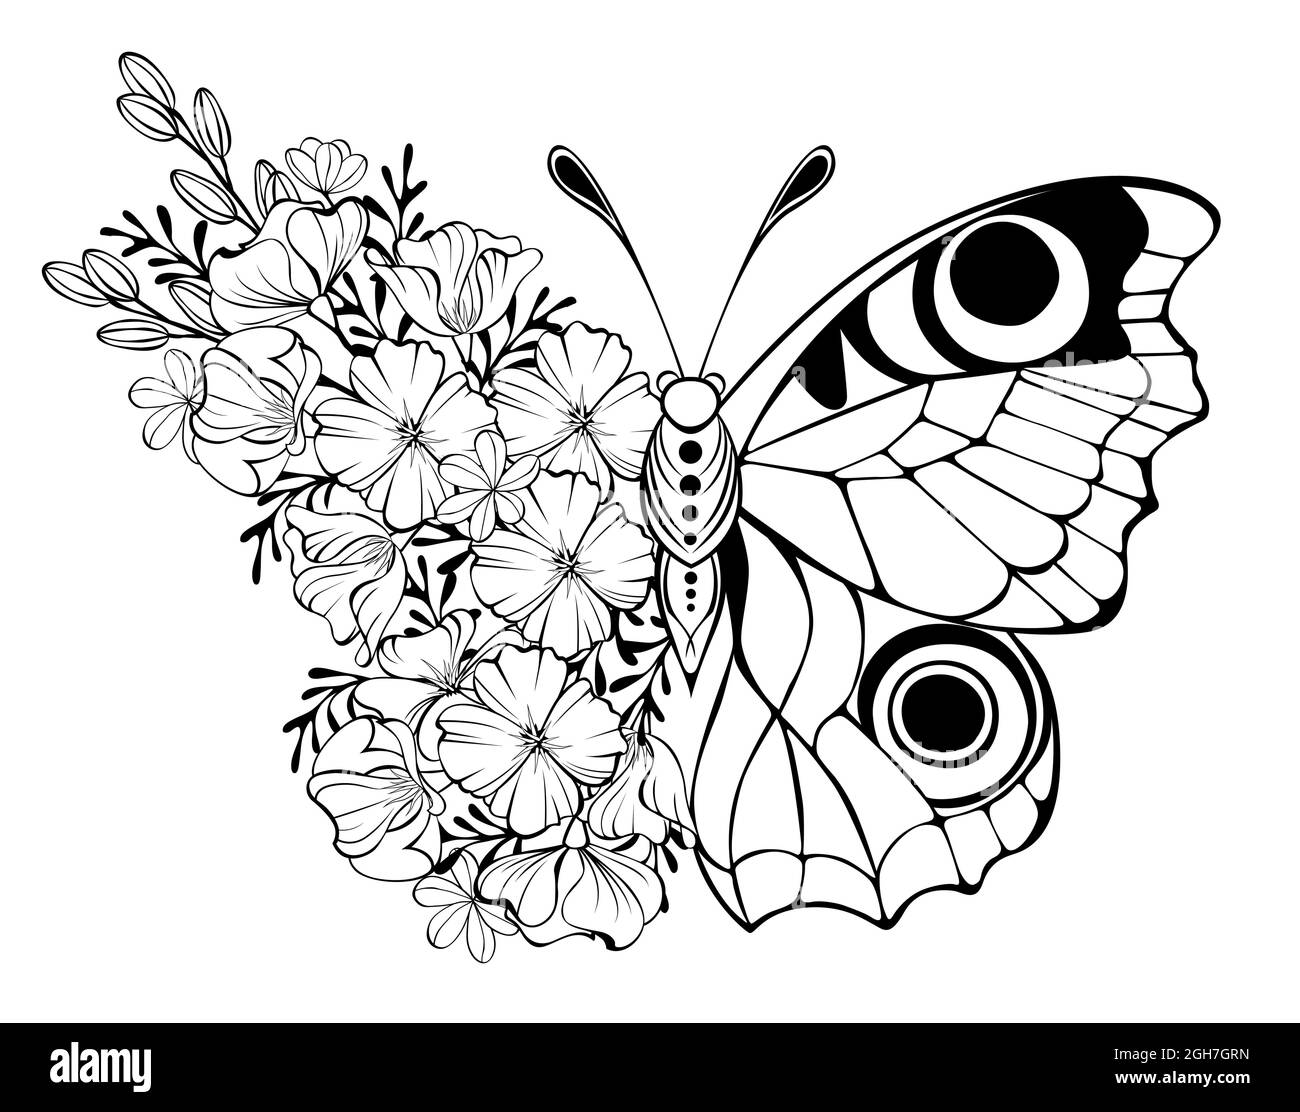 Kontur Blume Schmetterling, Pfauenauge mit Flügel mit Umriss California Mohnblume und Wildpflanzen auf weißem Hintergrund verziert. Stock Vektor